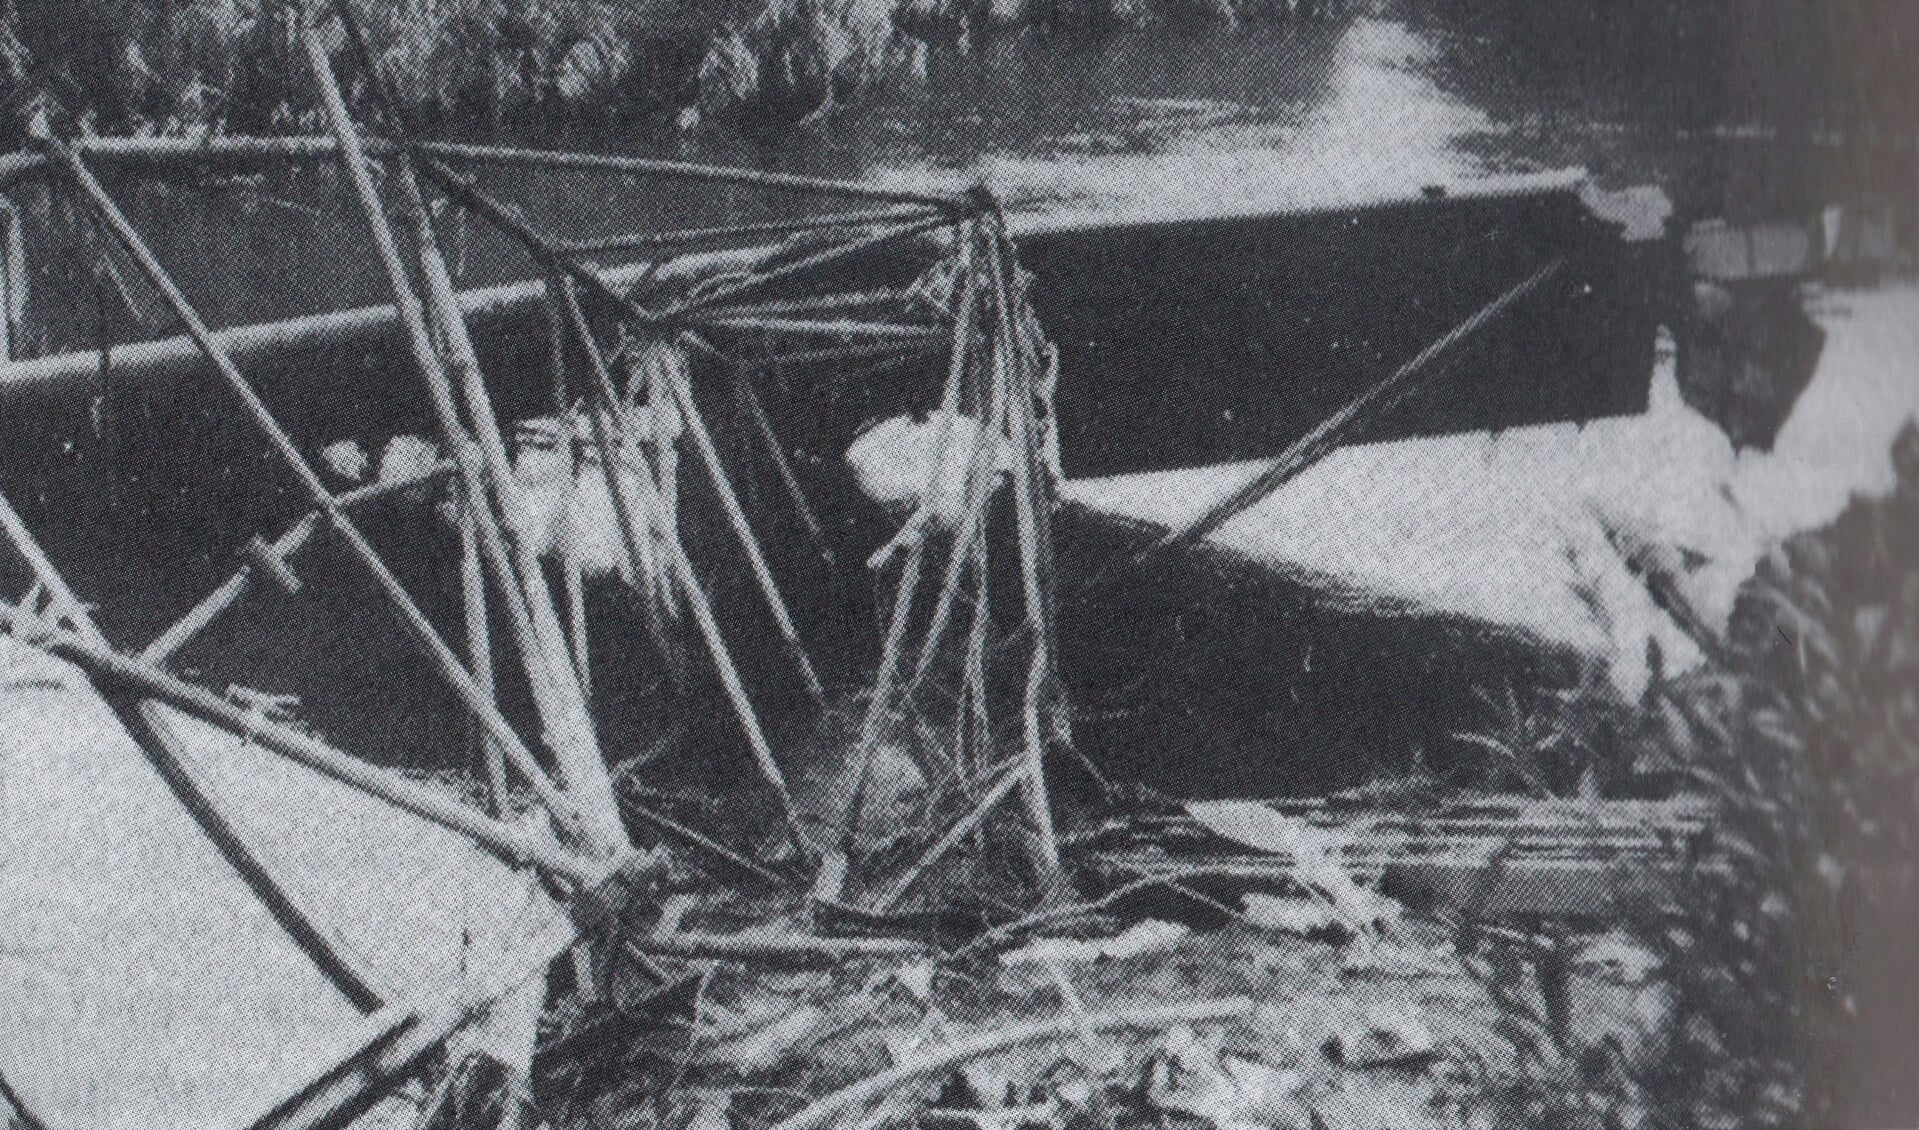 Het wrak van de neergestorte Fokker bommenwerper in het water van de Crezéepolder.